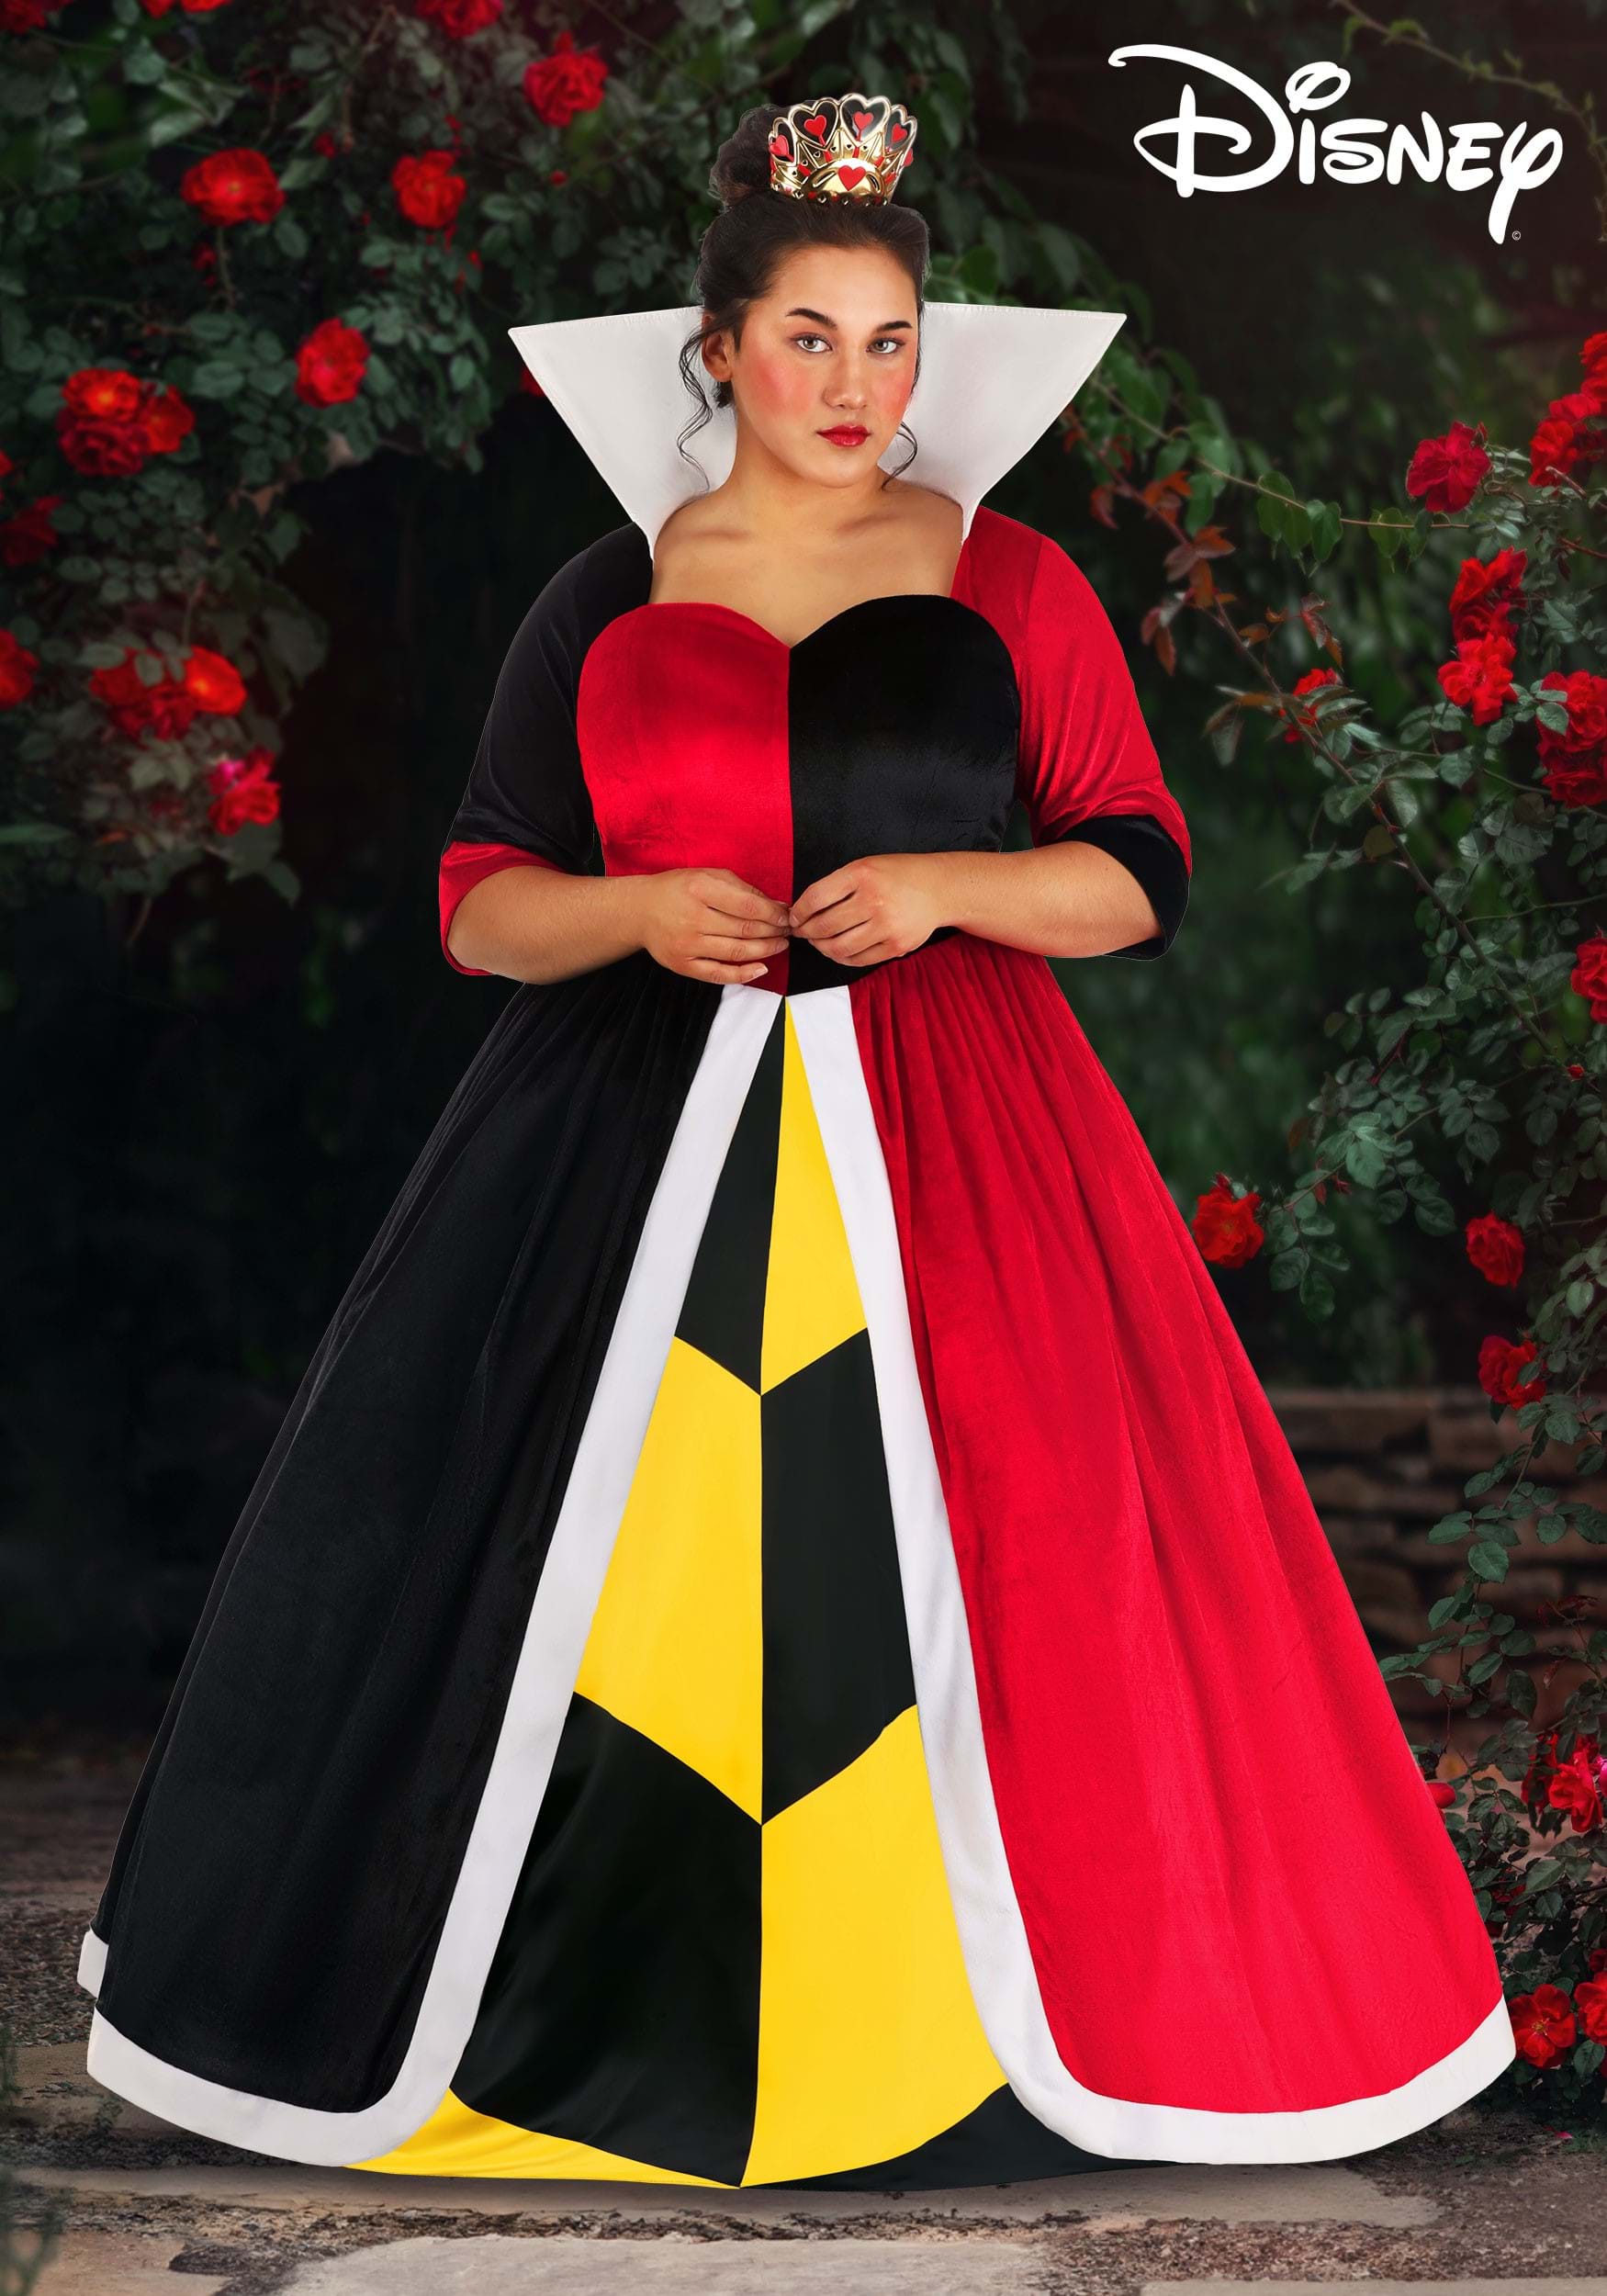 Women's Plus Size Deluxe Disney Queen of Hearts Costume | Alice in ...